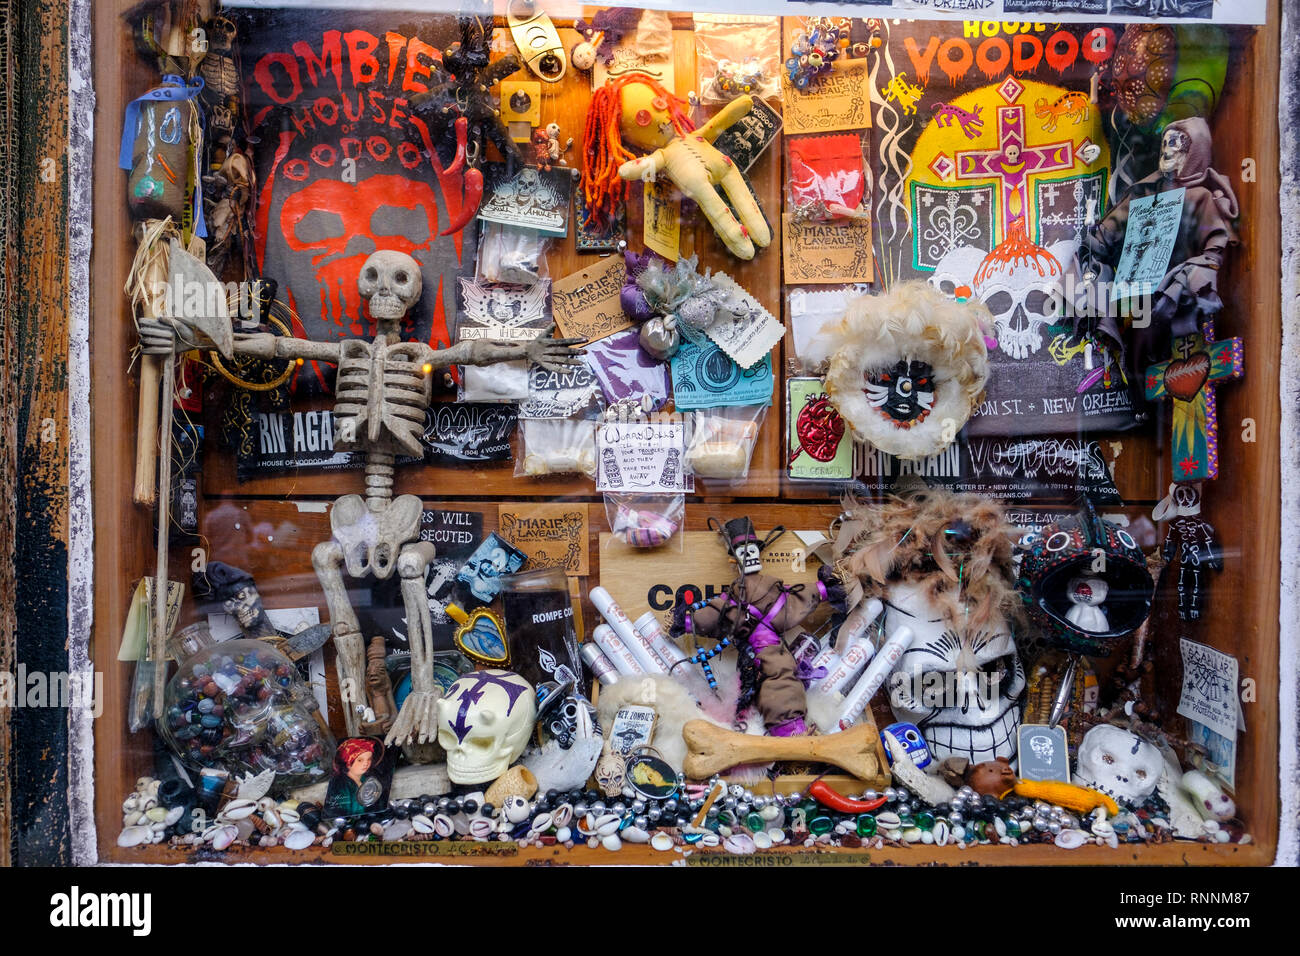 Reverend's Zombie House von Voodoo store Fenster, Voodoo Puppen, religiösen Artefakten, New Orleans French Quarter von New Orleans, Louisiana, USA Stockfoto